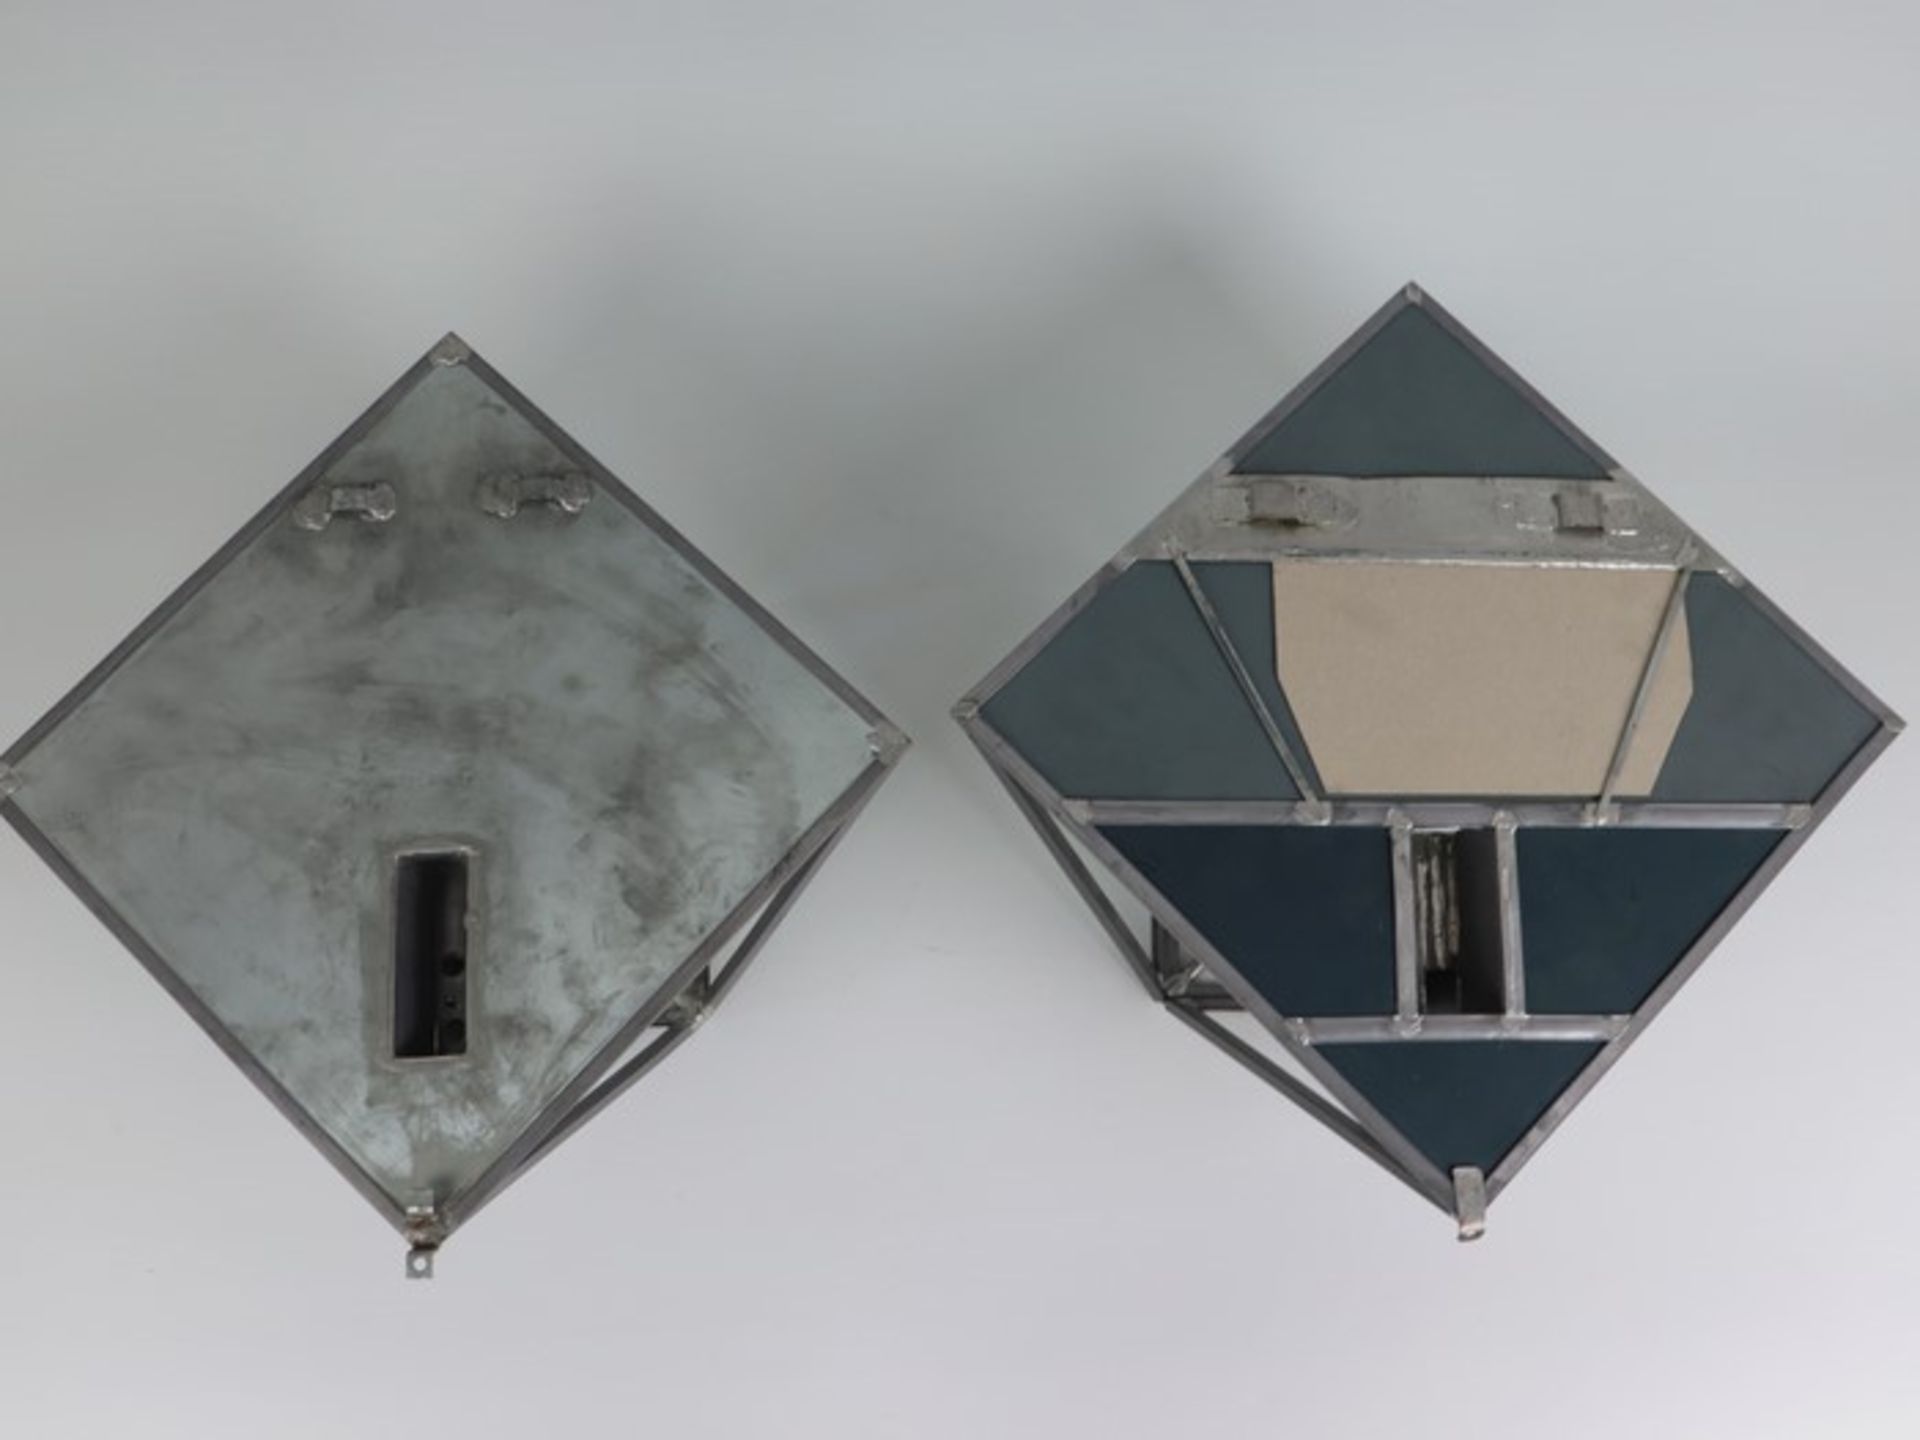 Wandlampen - PendantMetall/Glas, einflammig, Bleiverglasung, Blaseneinschlüsse, quadratisches - Bild 4 aus 4